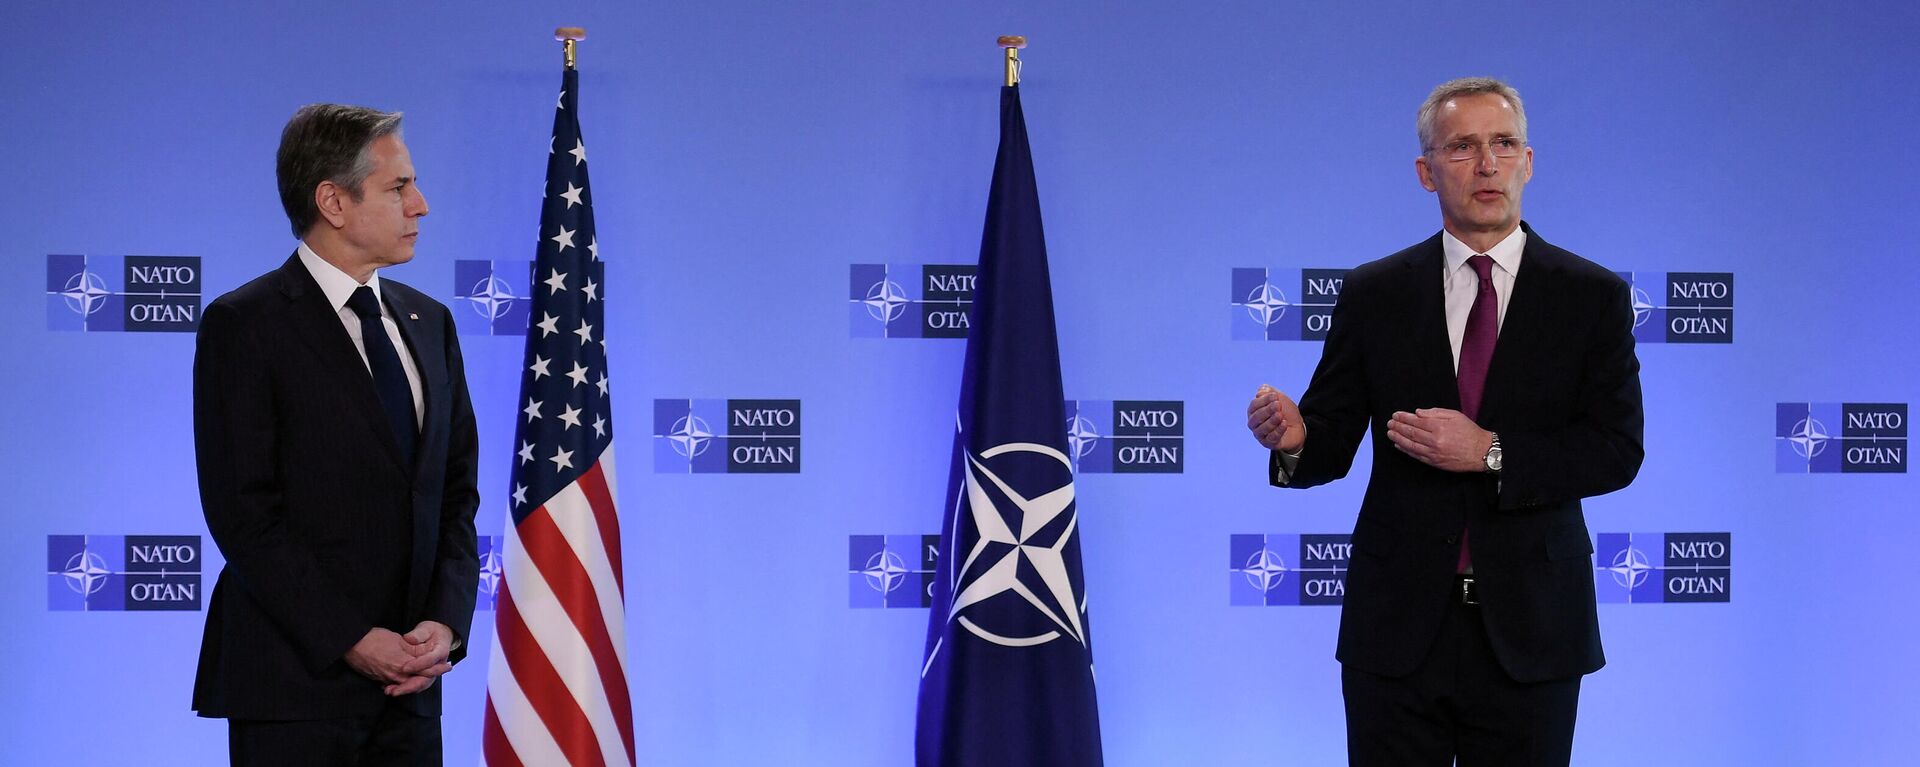 O secretário-geral da OTAN, Jens Stoltenberg, e o secretário de Estado dos EUA, Antony Blinken, falam durante uma entrevista coletiva antes de uma reunião de ministros das Relações Exteriores da OTAN, Bruxelas, Bélgica, em 4 de março de 2022 - Sputnik Brasil, 1920, 04.03.2022